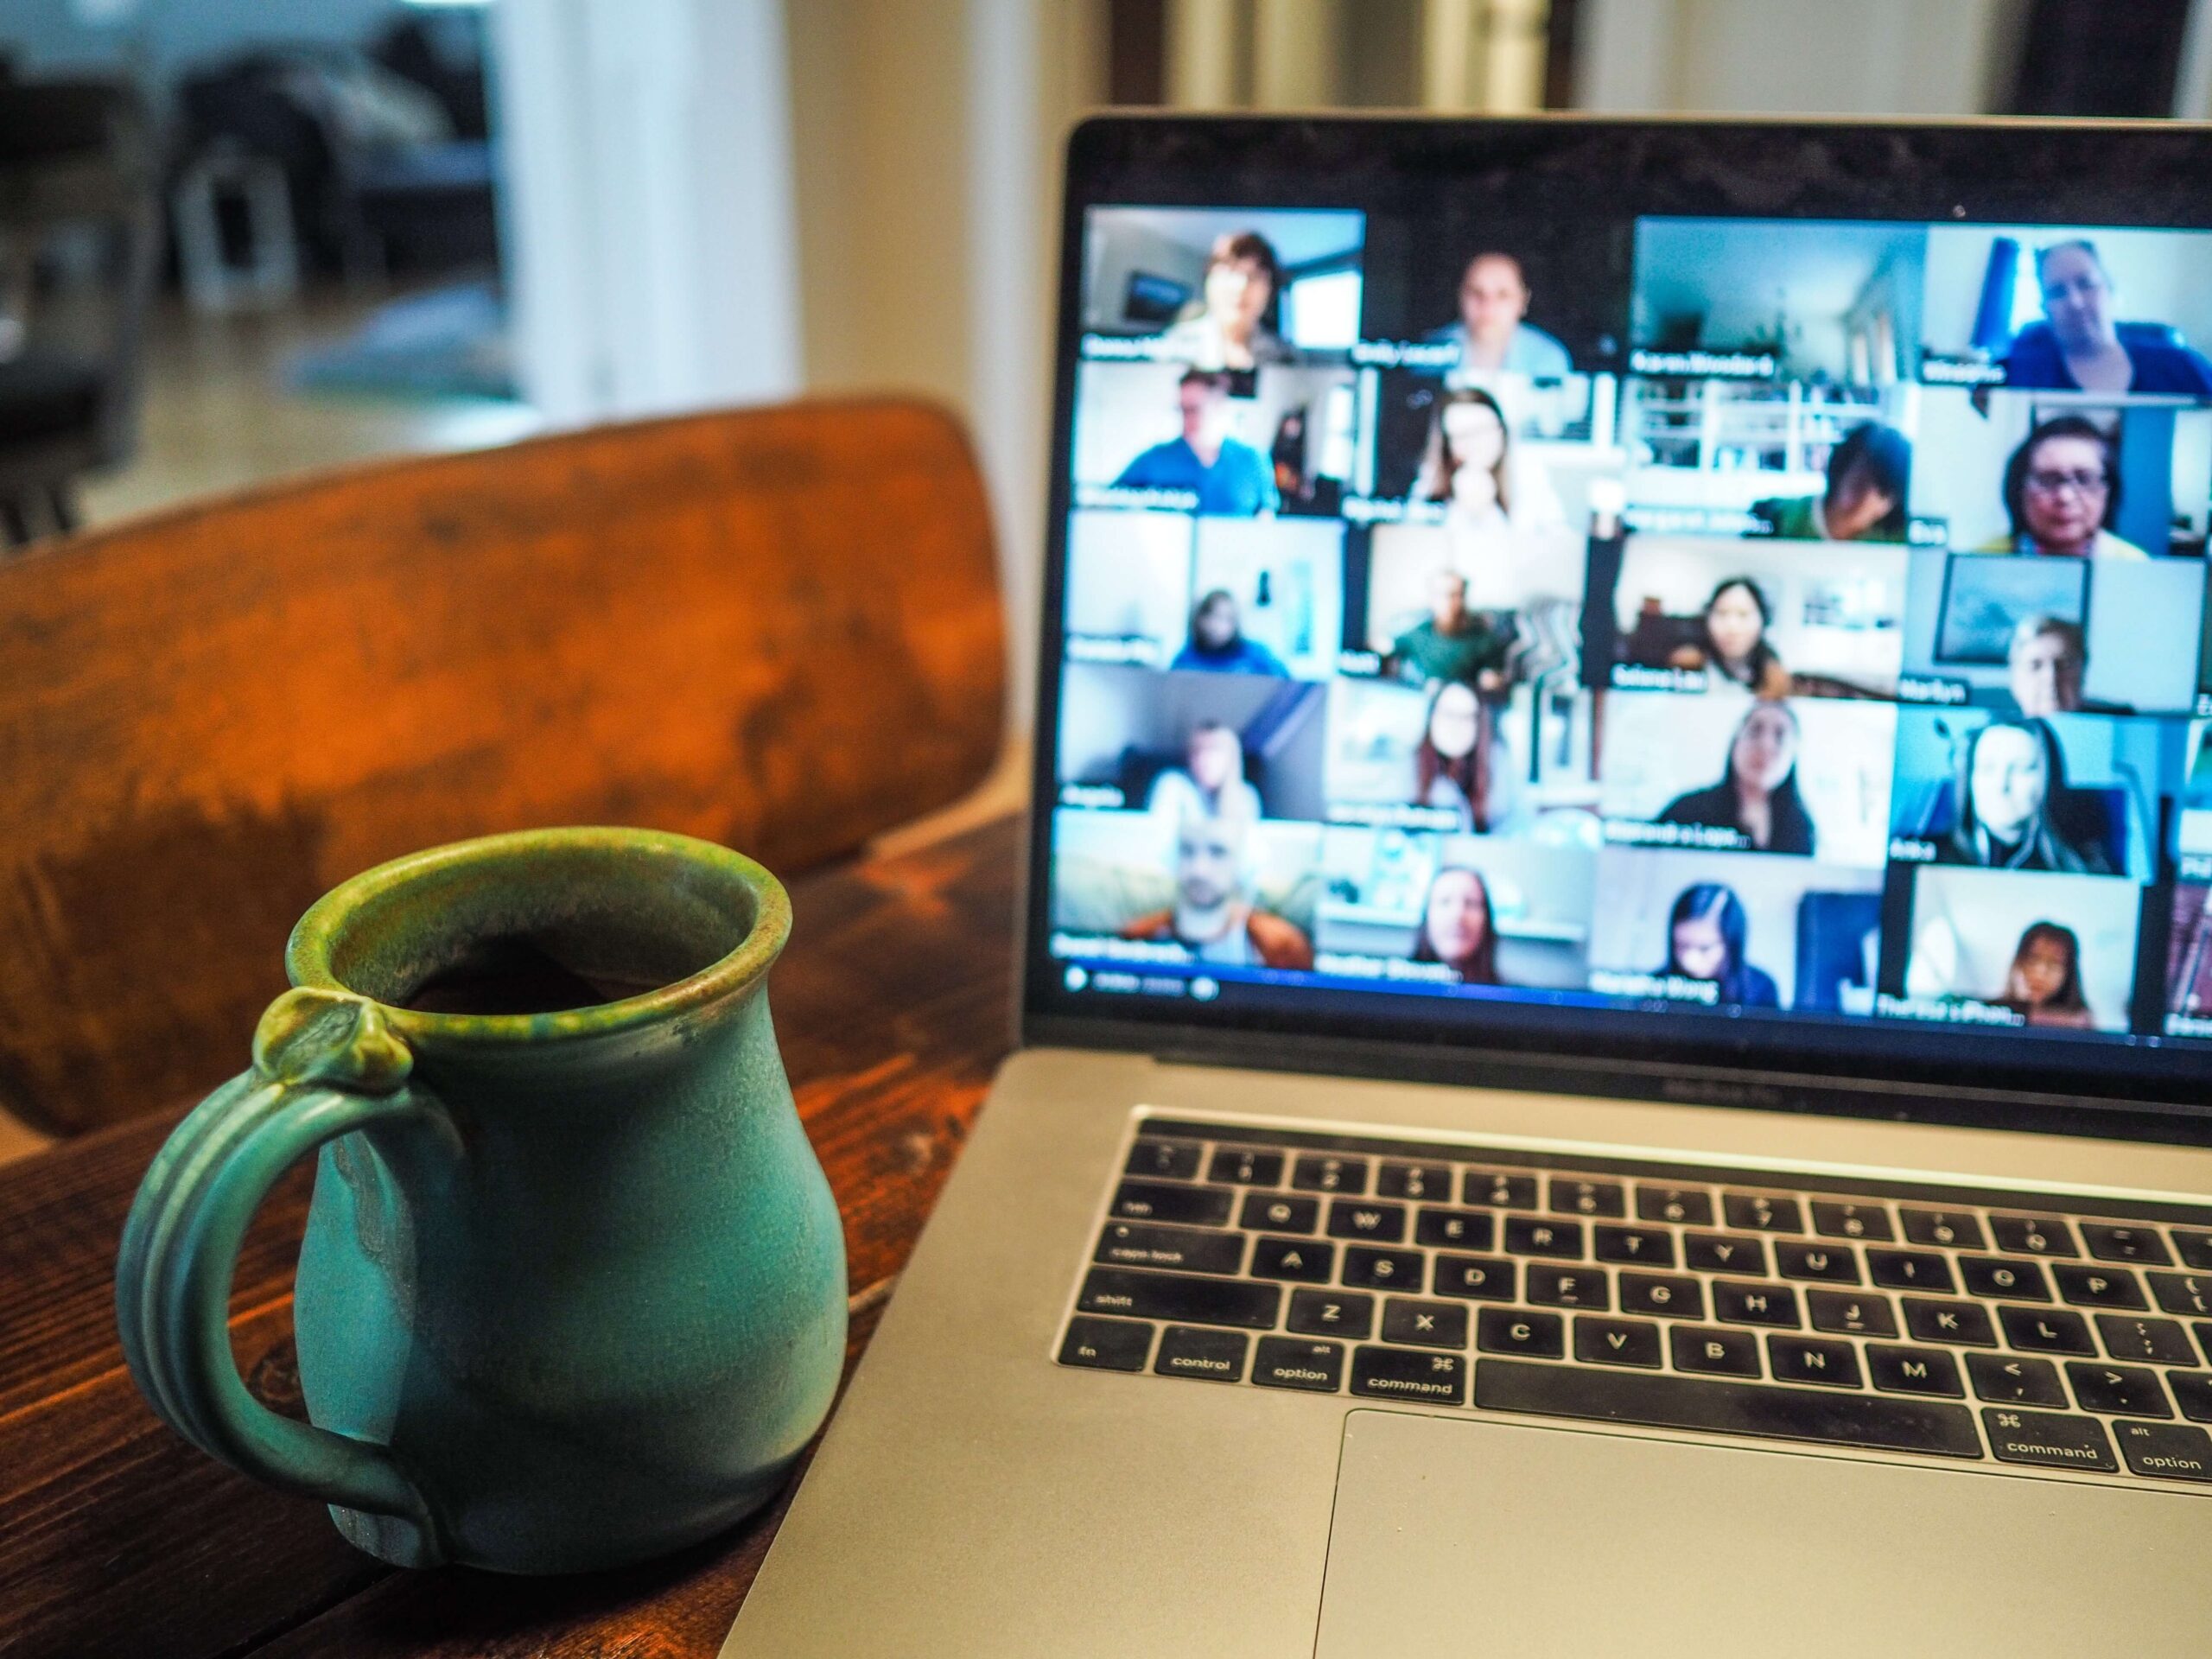 PCに映るオンライン会議参加者の顔と机に置かれたコーヒーの画像